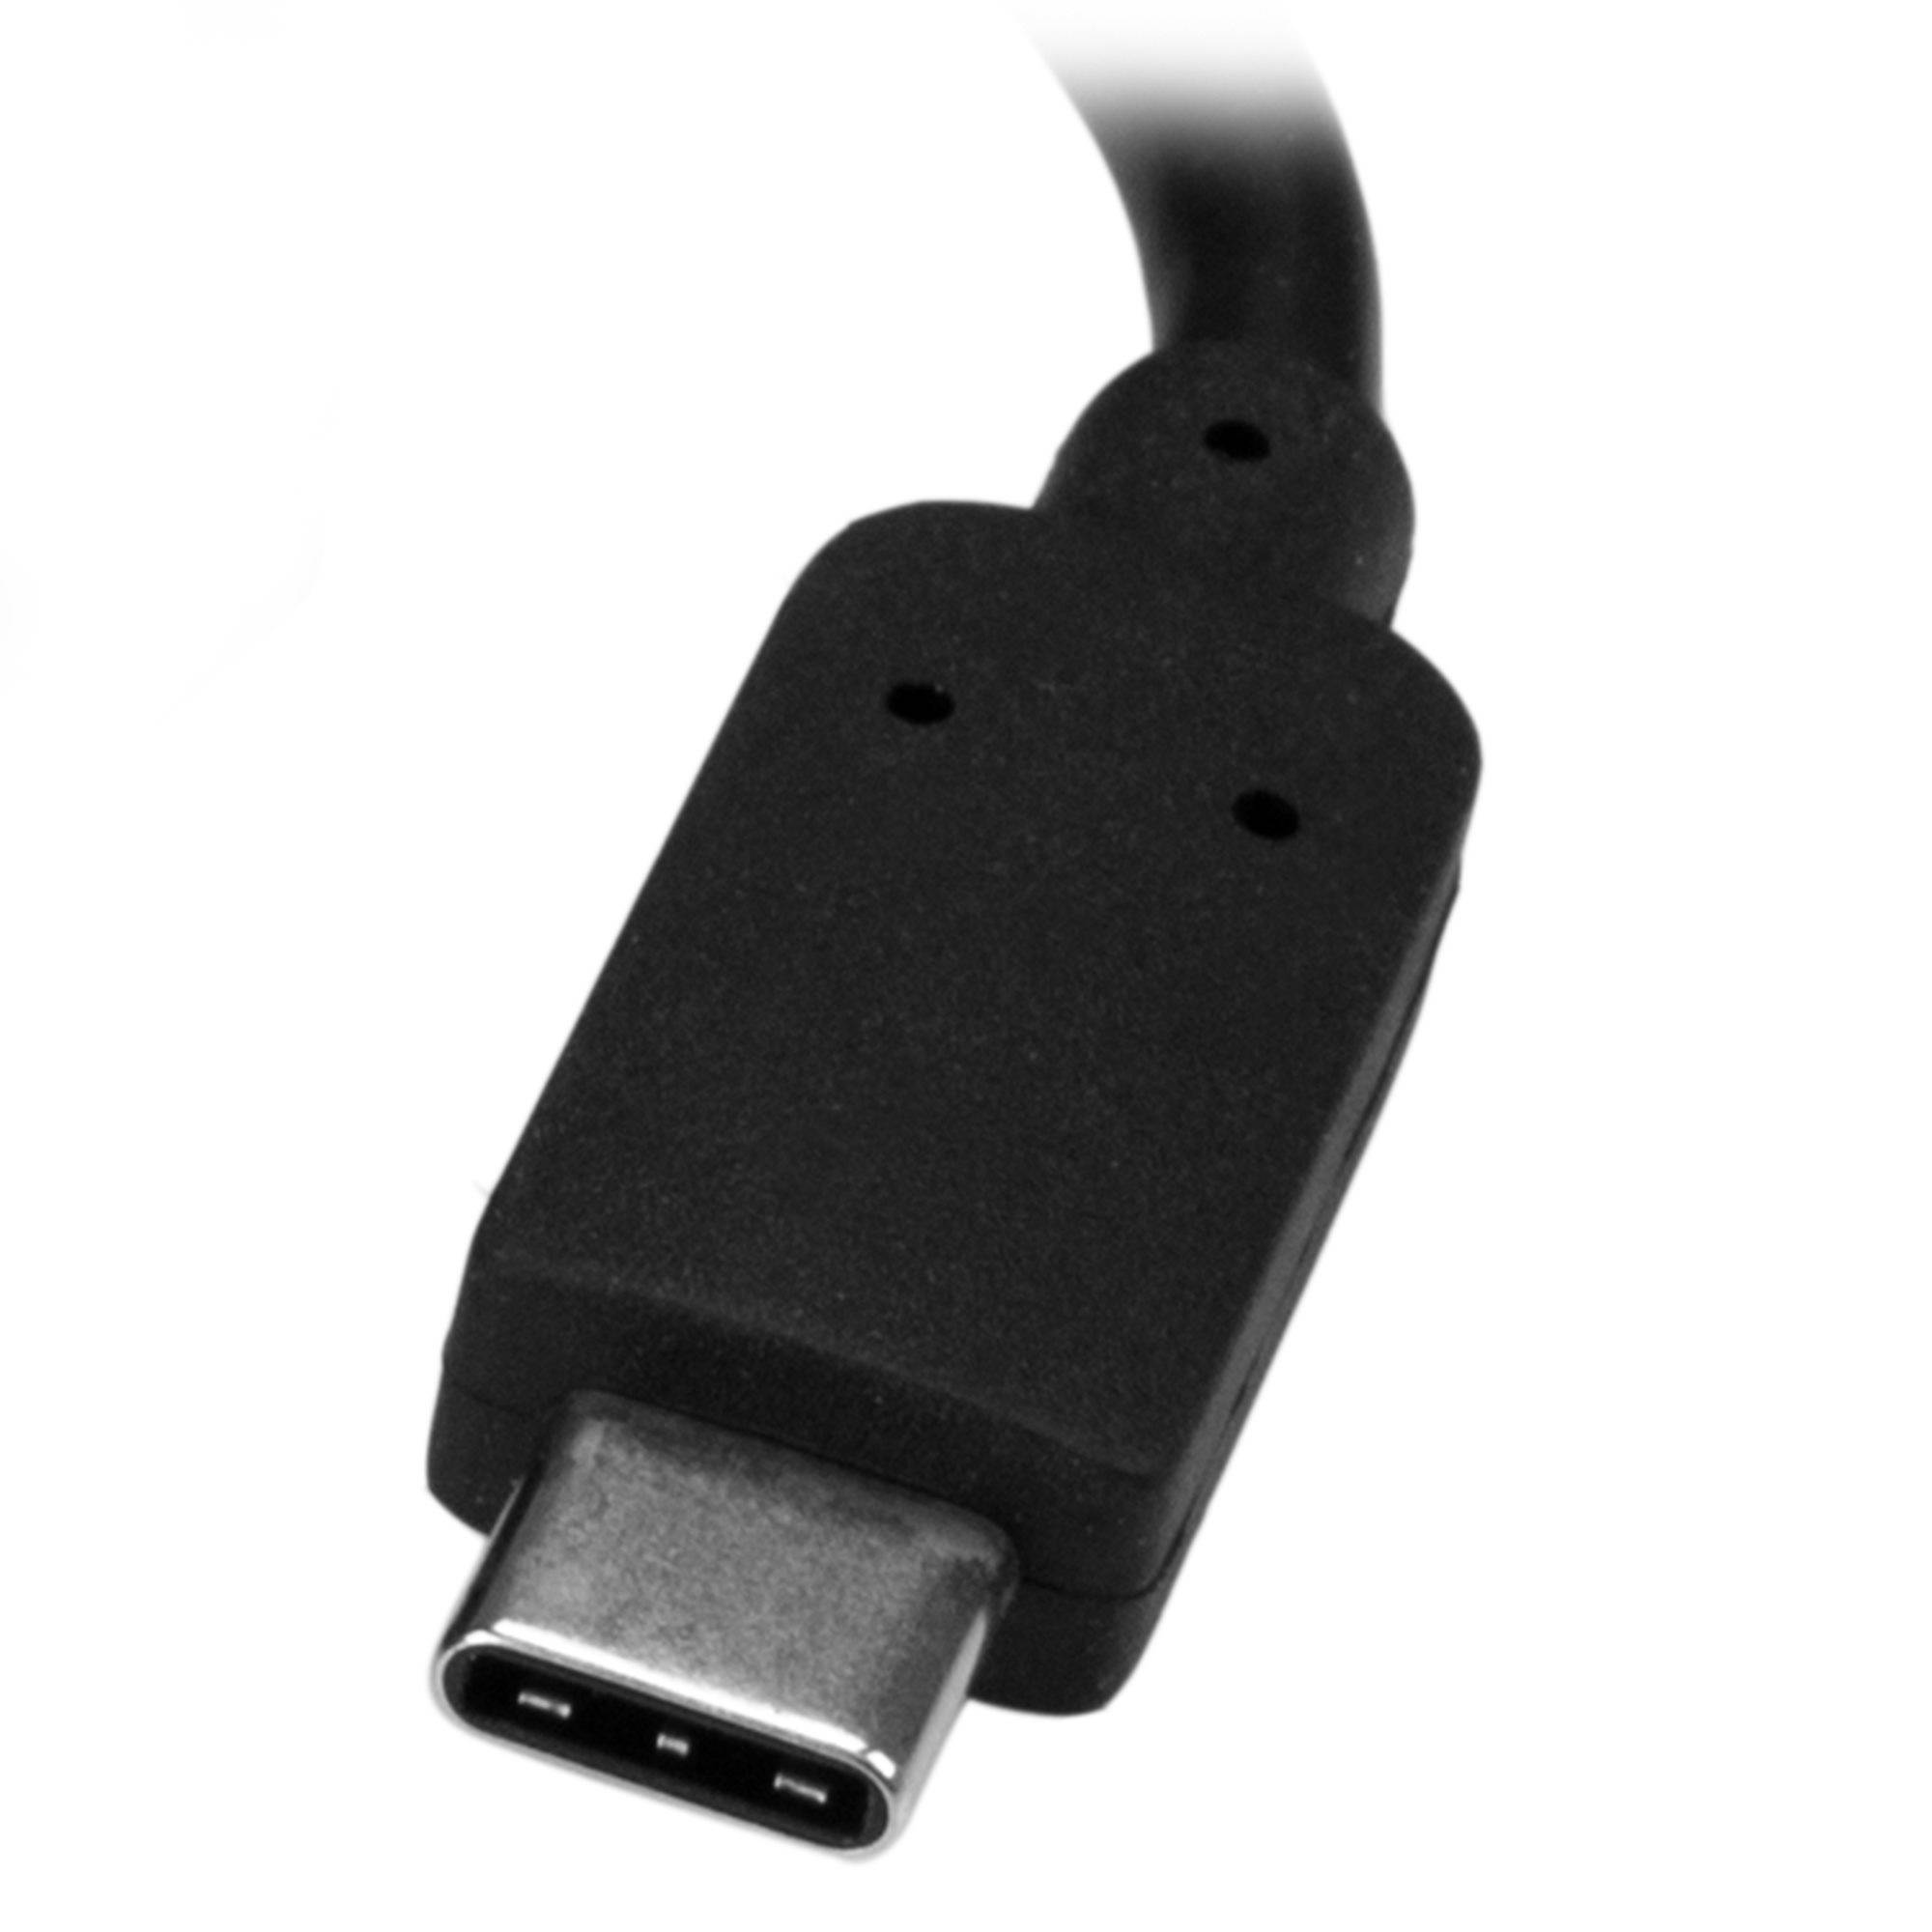 Rca Informatique - image du produit : ADAPTATEUR USB-C VERS GBE AVEC USB POWER DELIVERY - NOIR